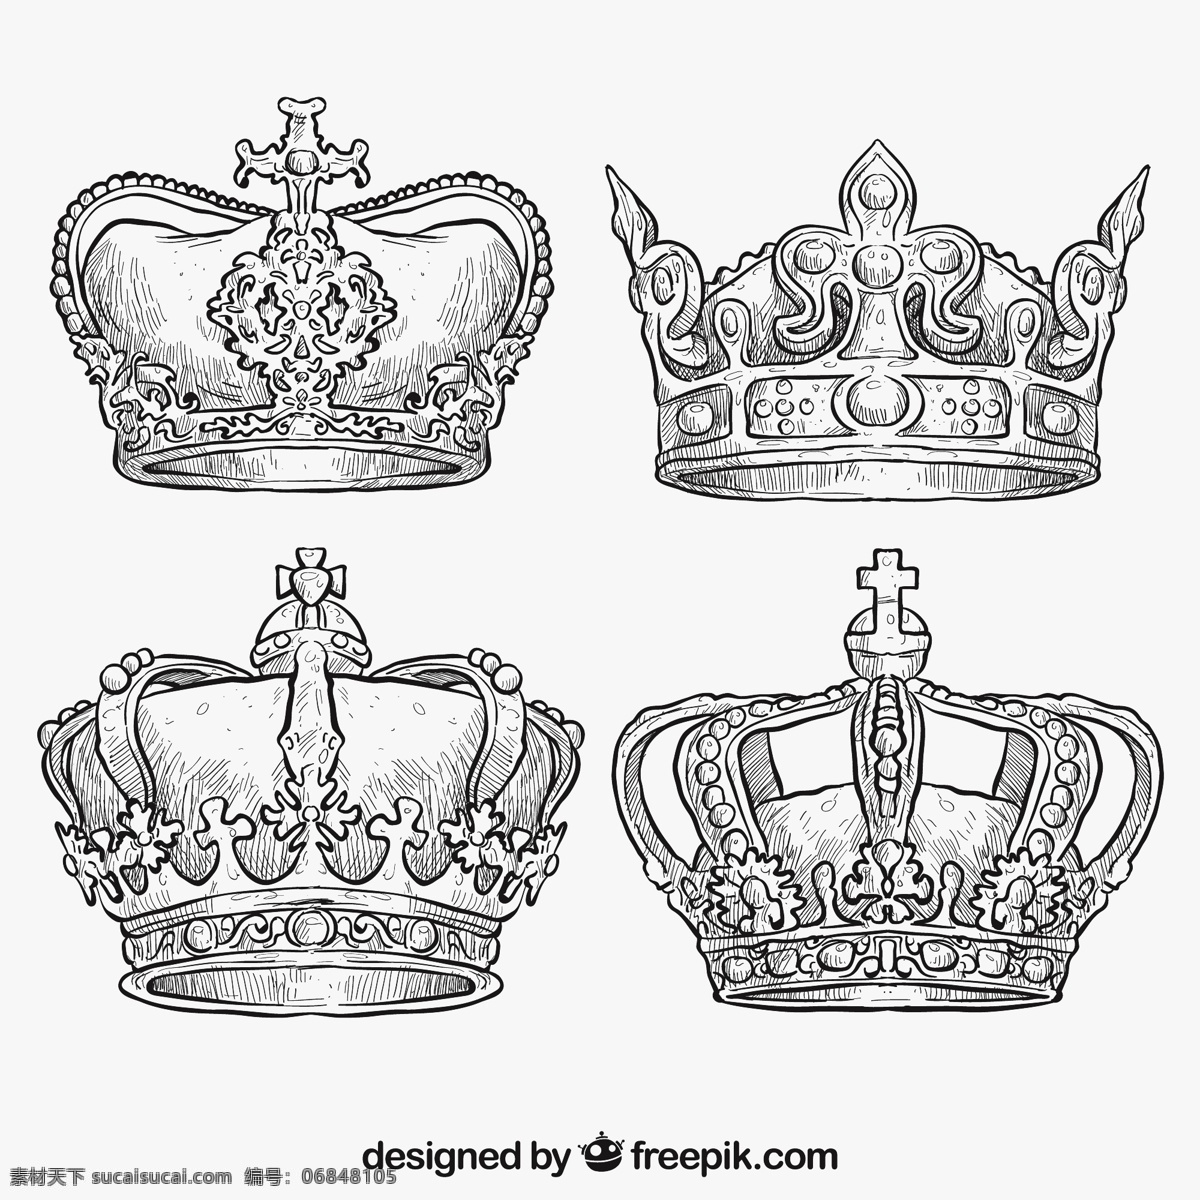 手工 绘制 皇家 冠 一方面 皇冠 饰品 手绘 绘图 国王 王后 观赏 宝石 王国 粗略 白色